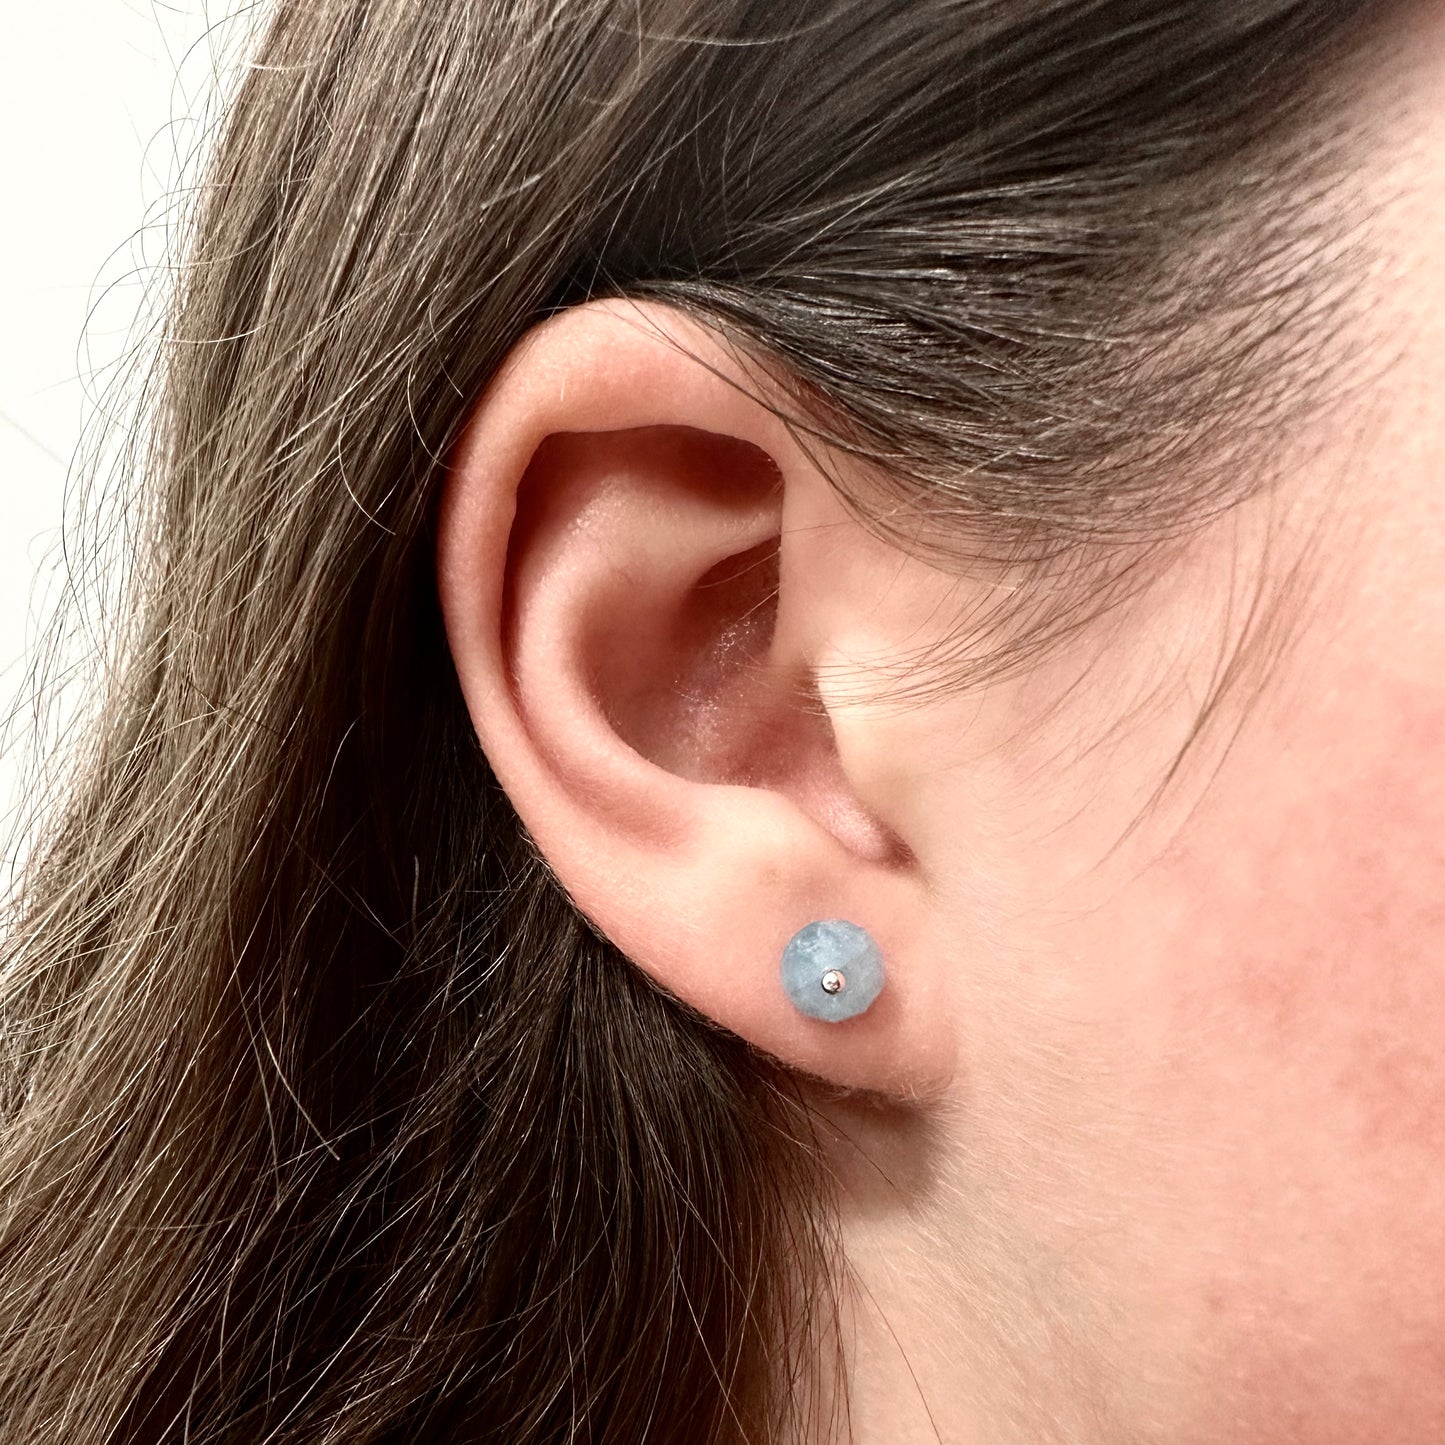 Aquamarine Stud Earring